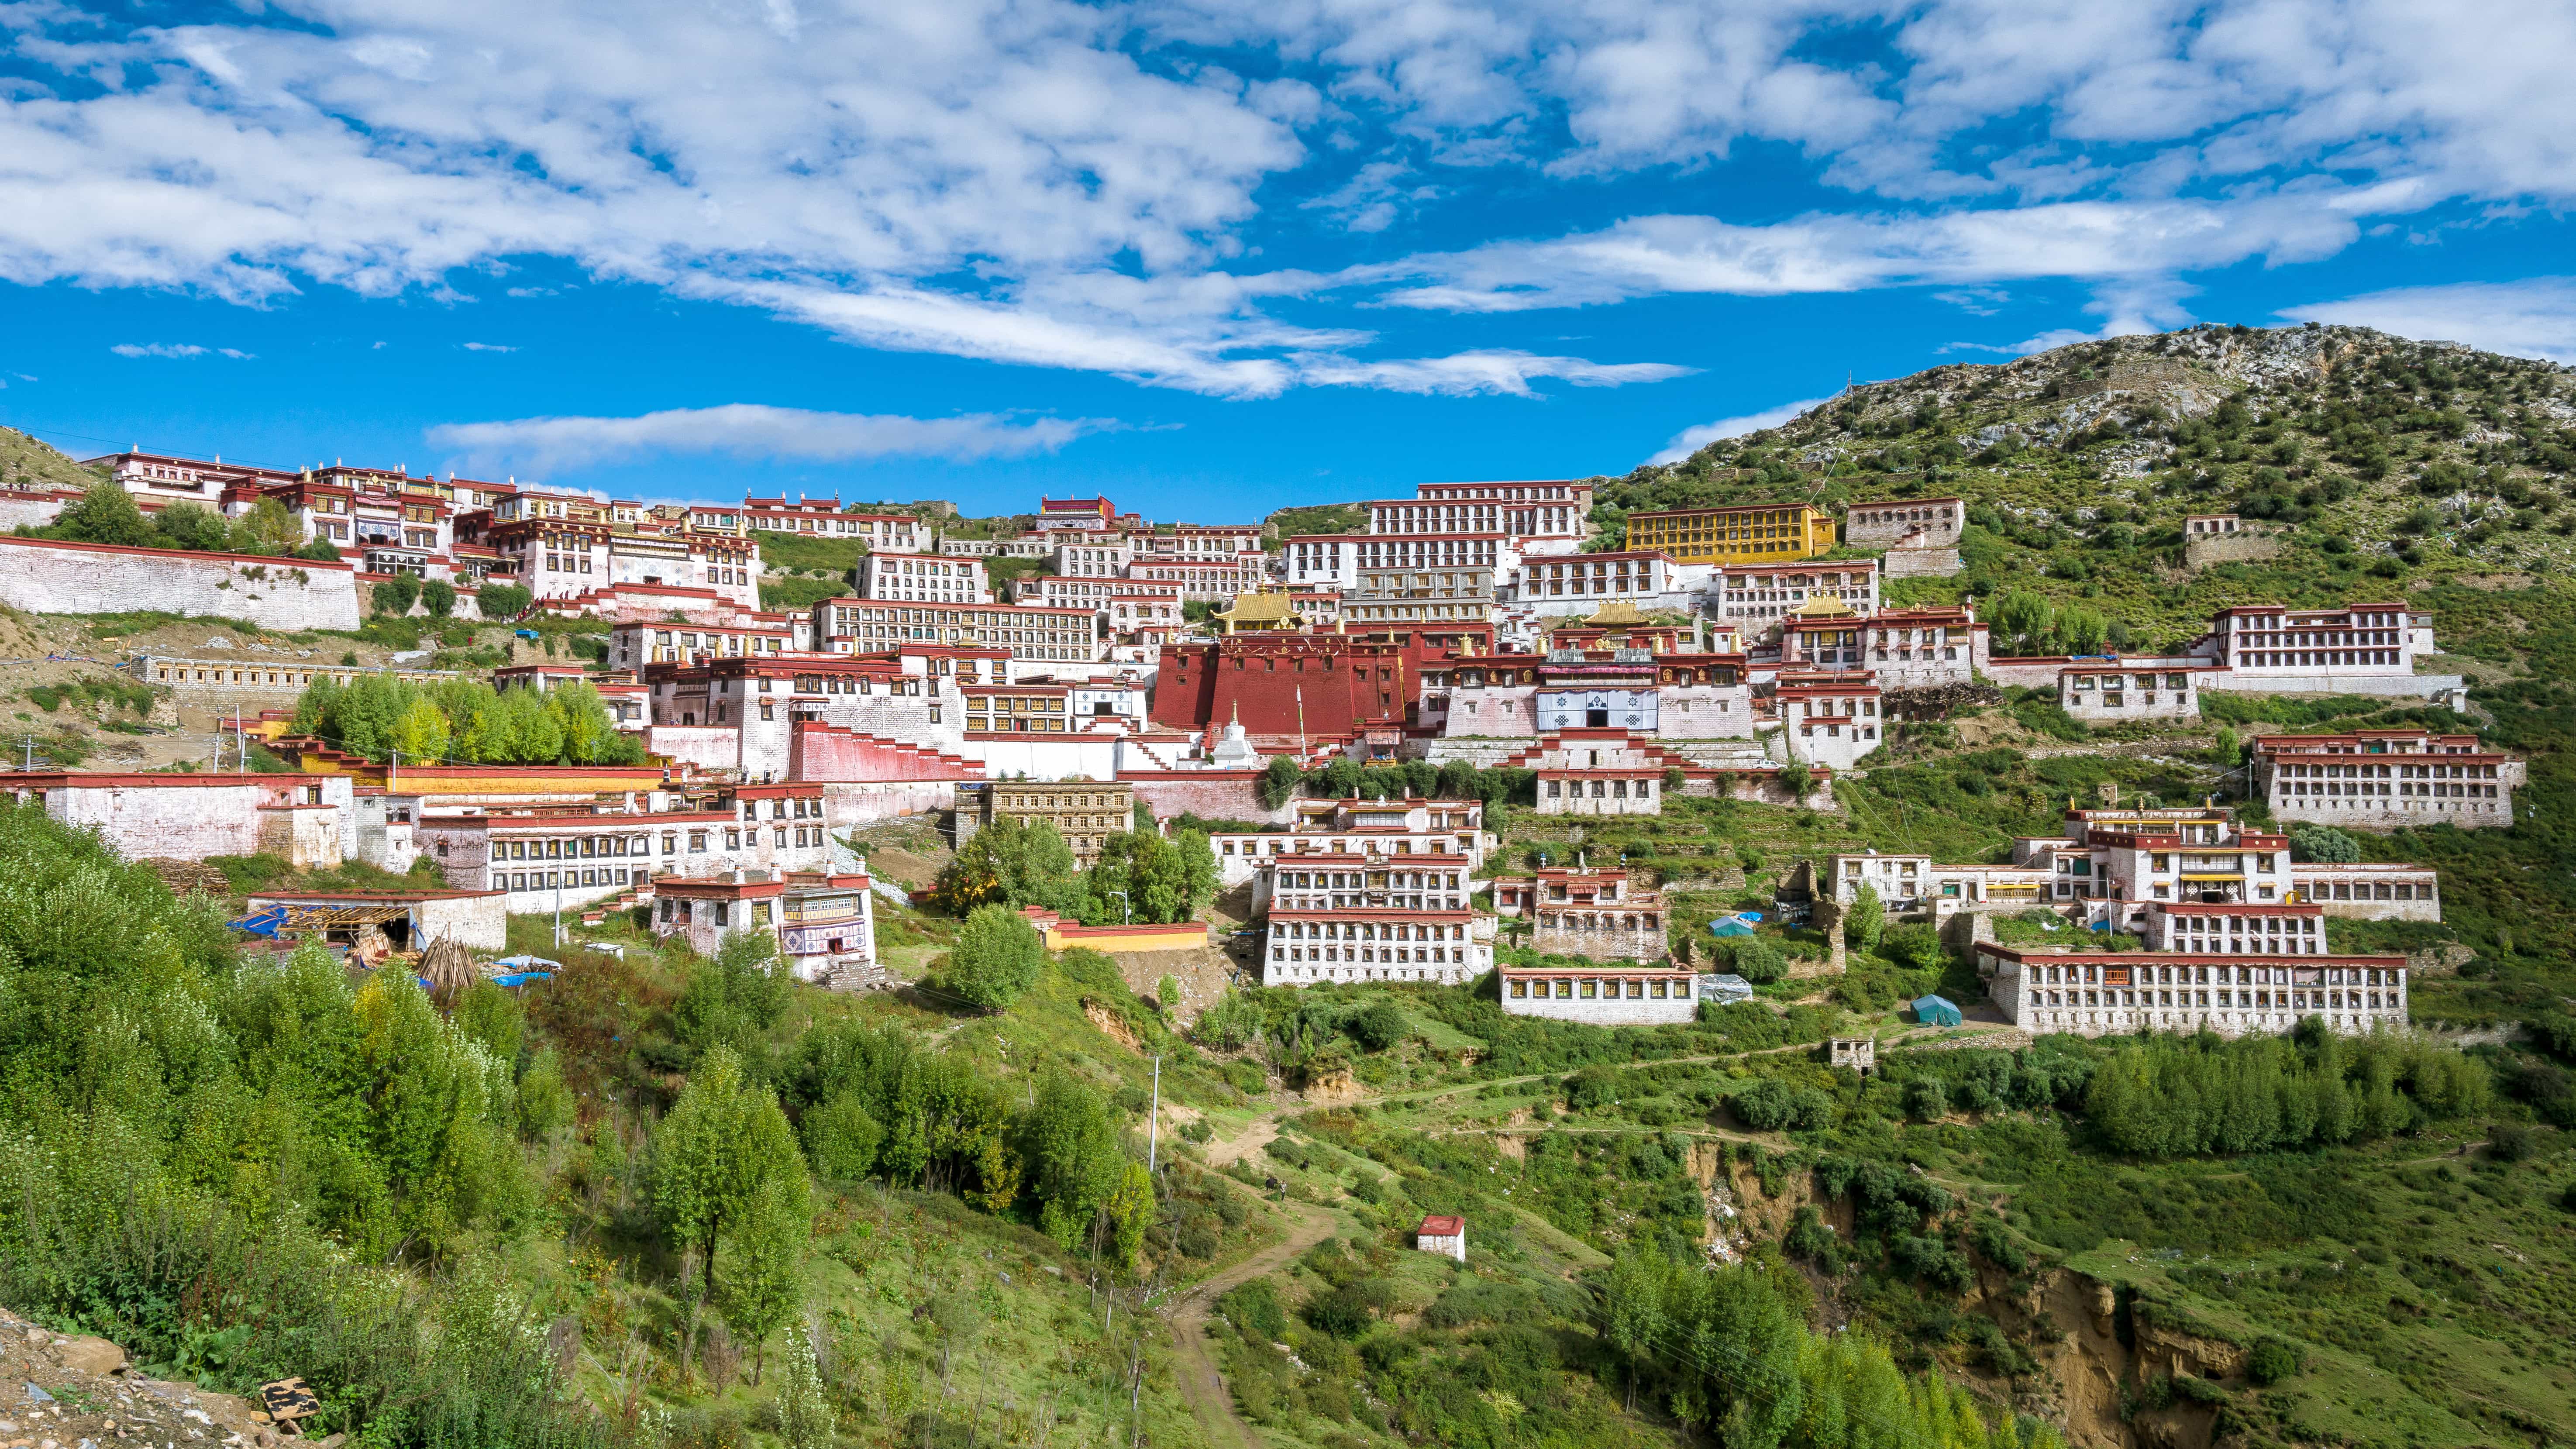 View-on-the-Gangen-Monastery-in-Tibet.jpg